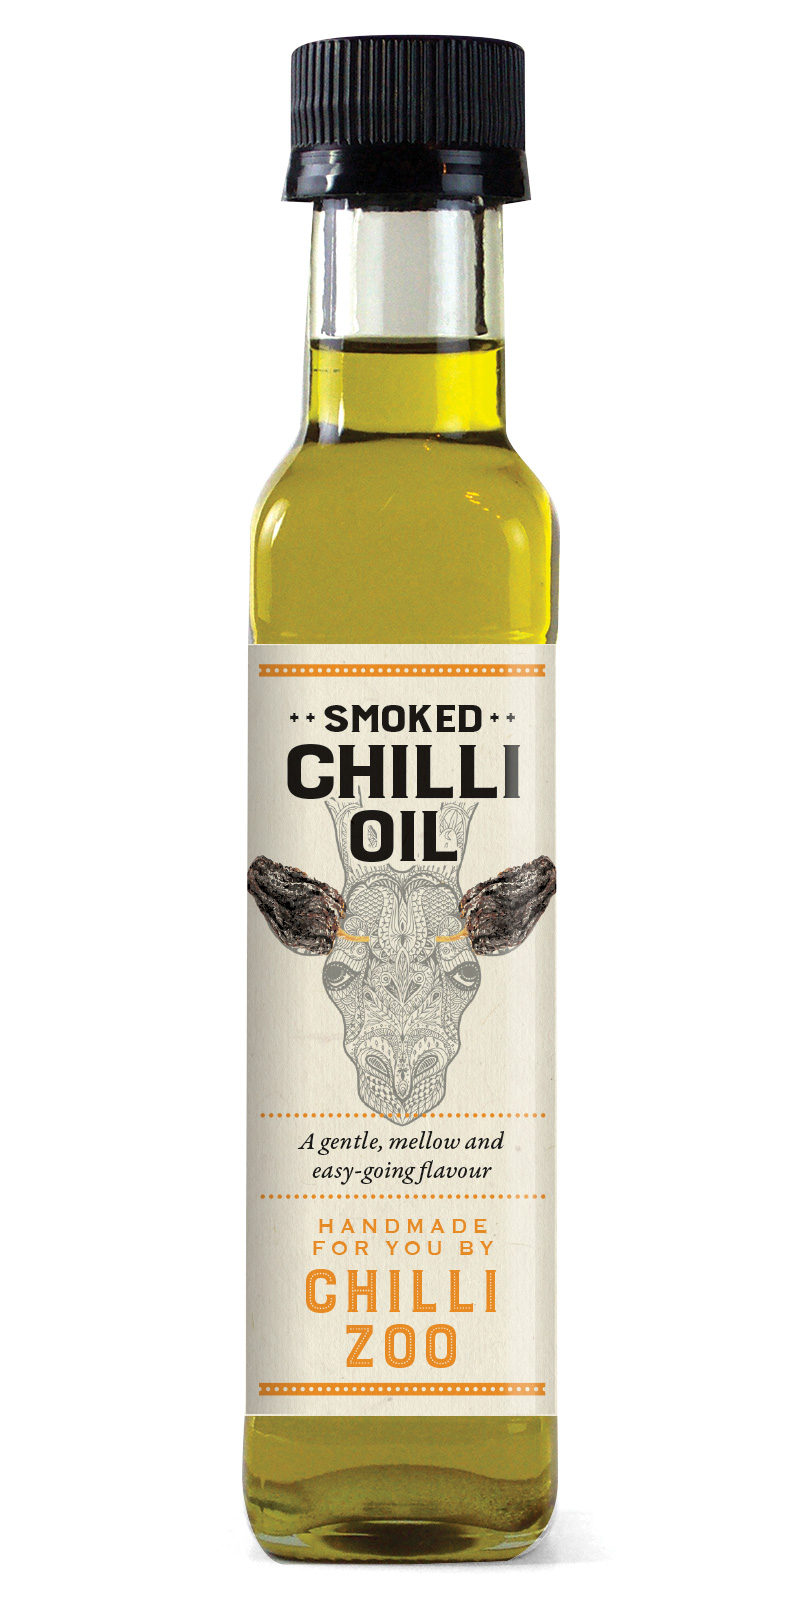 Chilli Zoo Smoked Chilli Oil